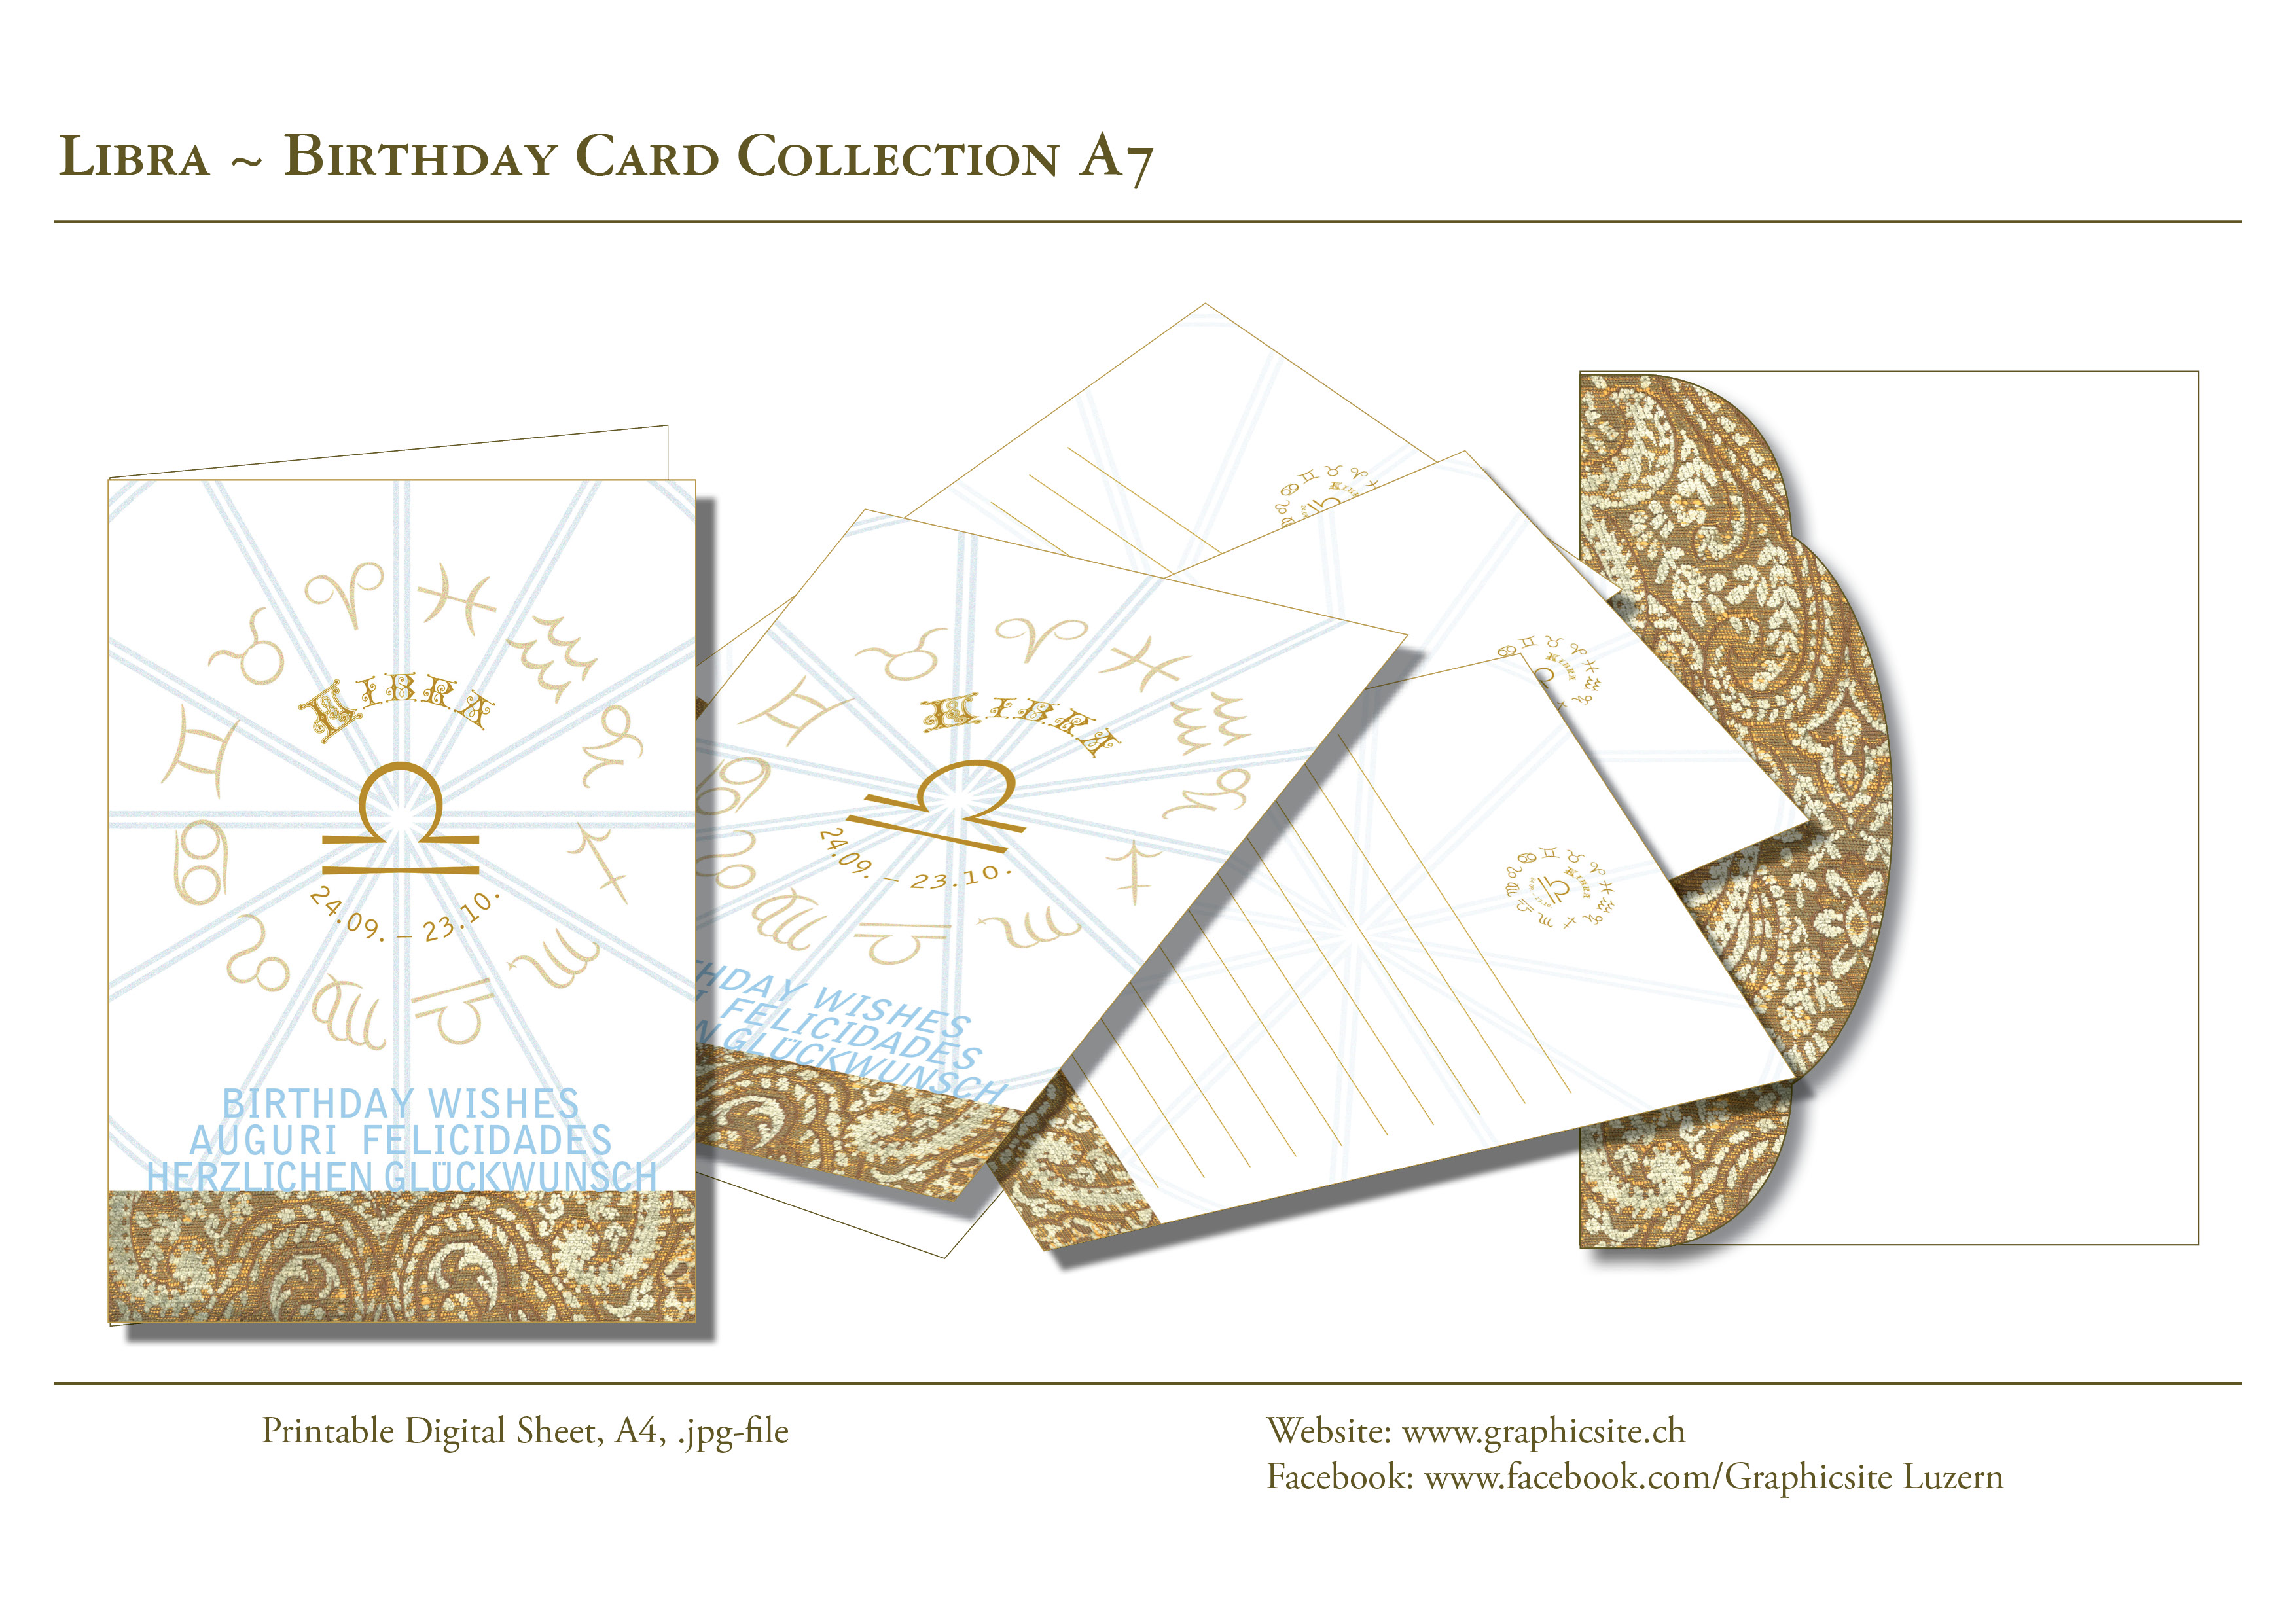 Druckbare Karten - selber drucken - Karten A7 - Grusskarten - Geburtstagskarten - Geschenkkarten - Horoskop - Sternzeichen - Waage - Grafik Design Luzern, Grafiker Luzern, Schweiz